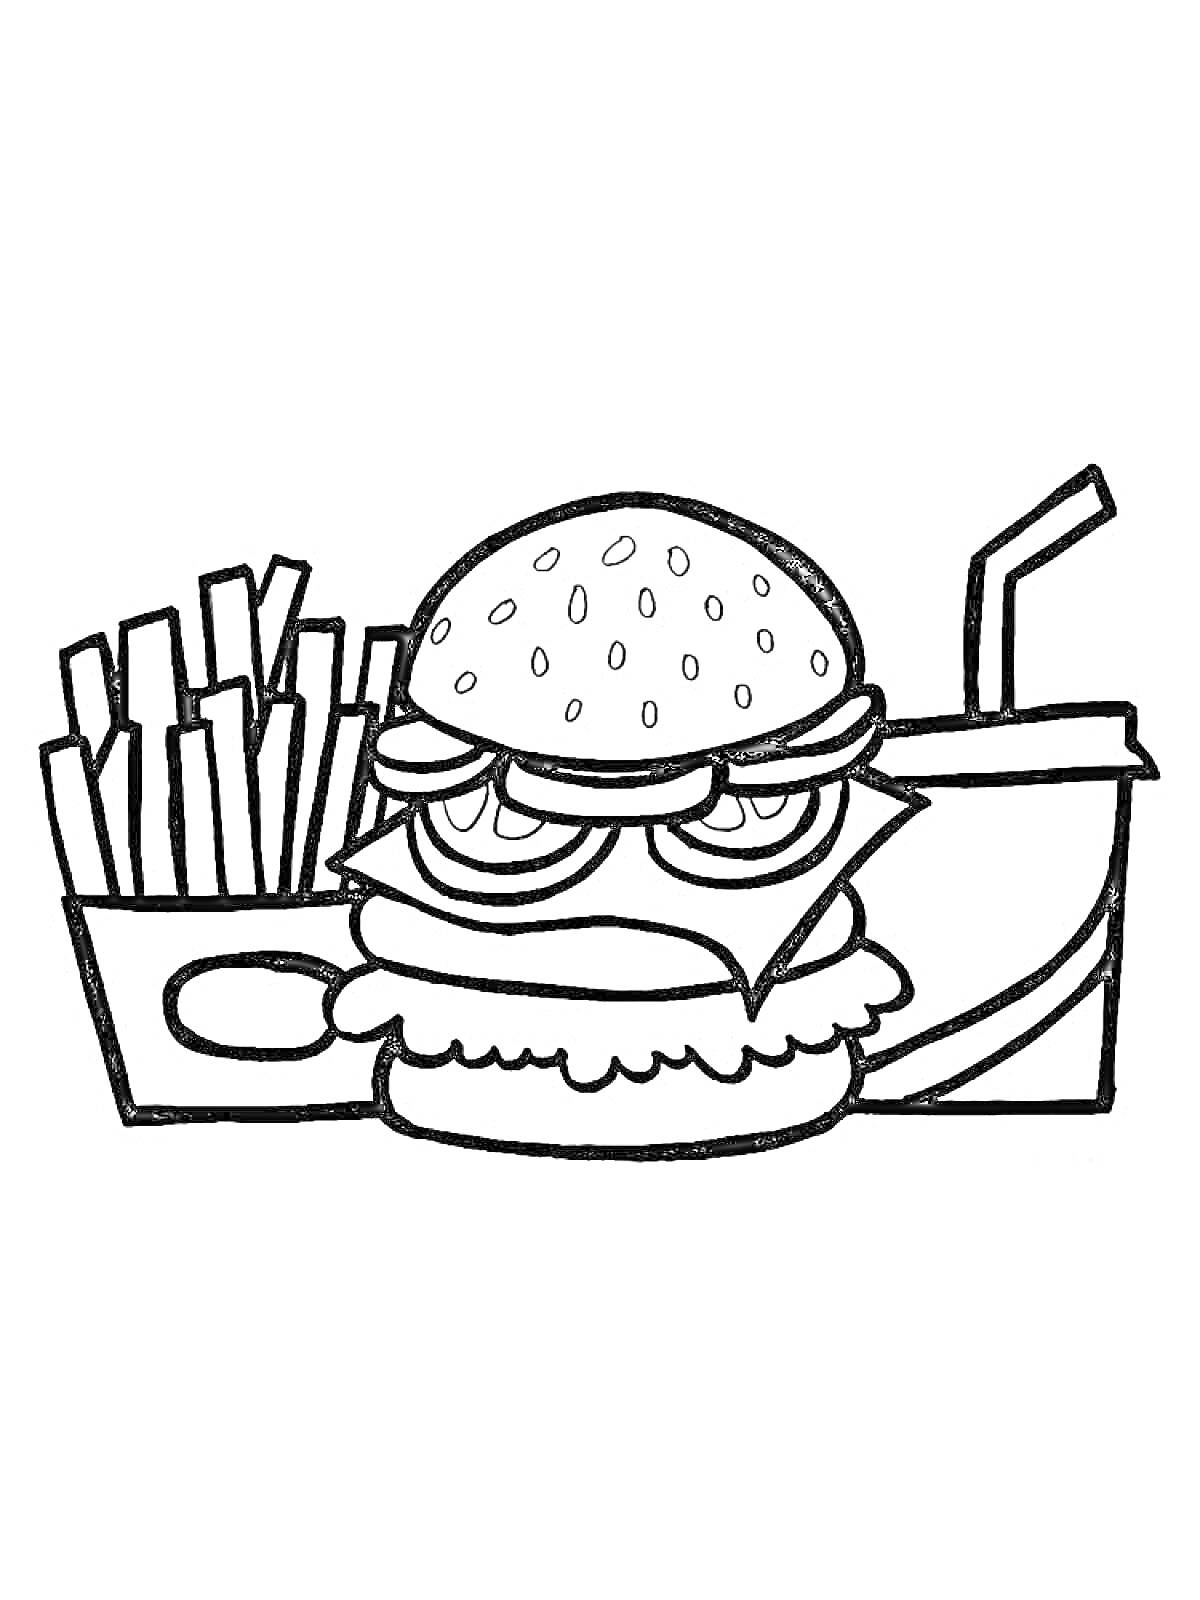 Раскраска бургер с картофелем фри и стаканом с трубочкой